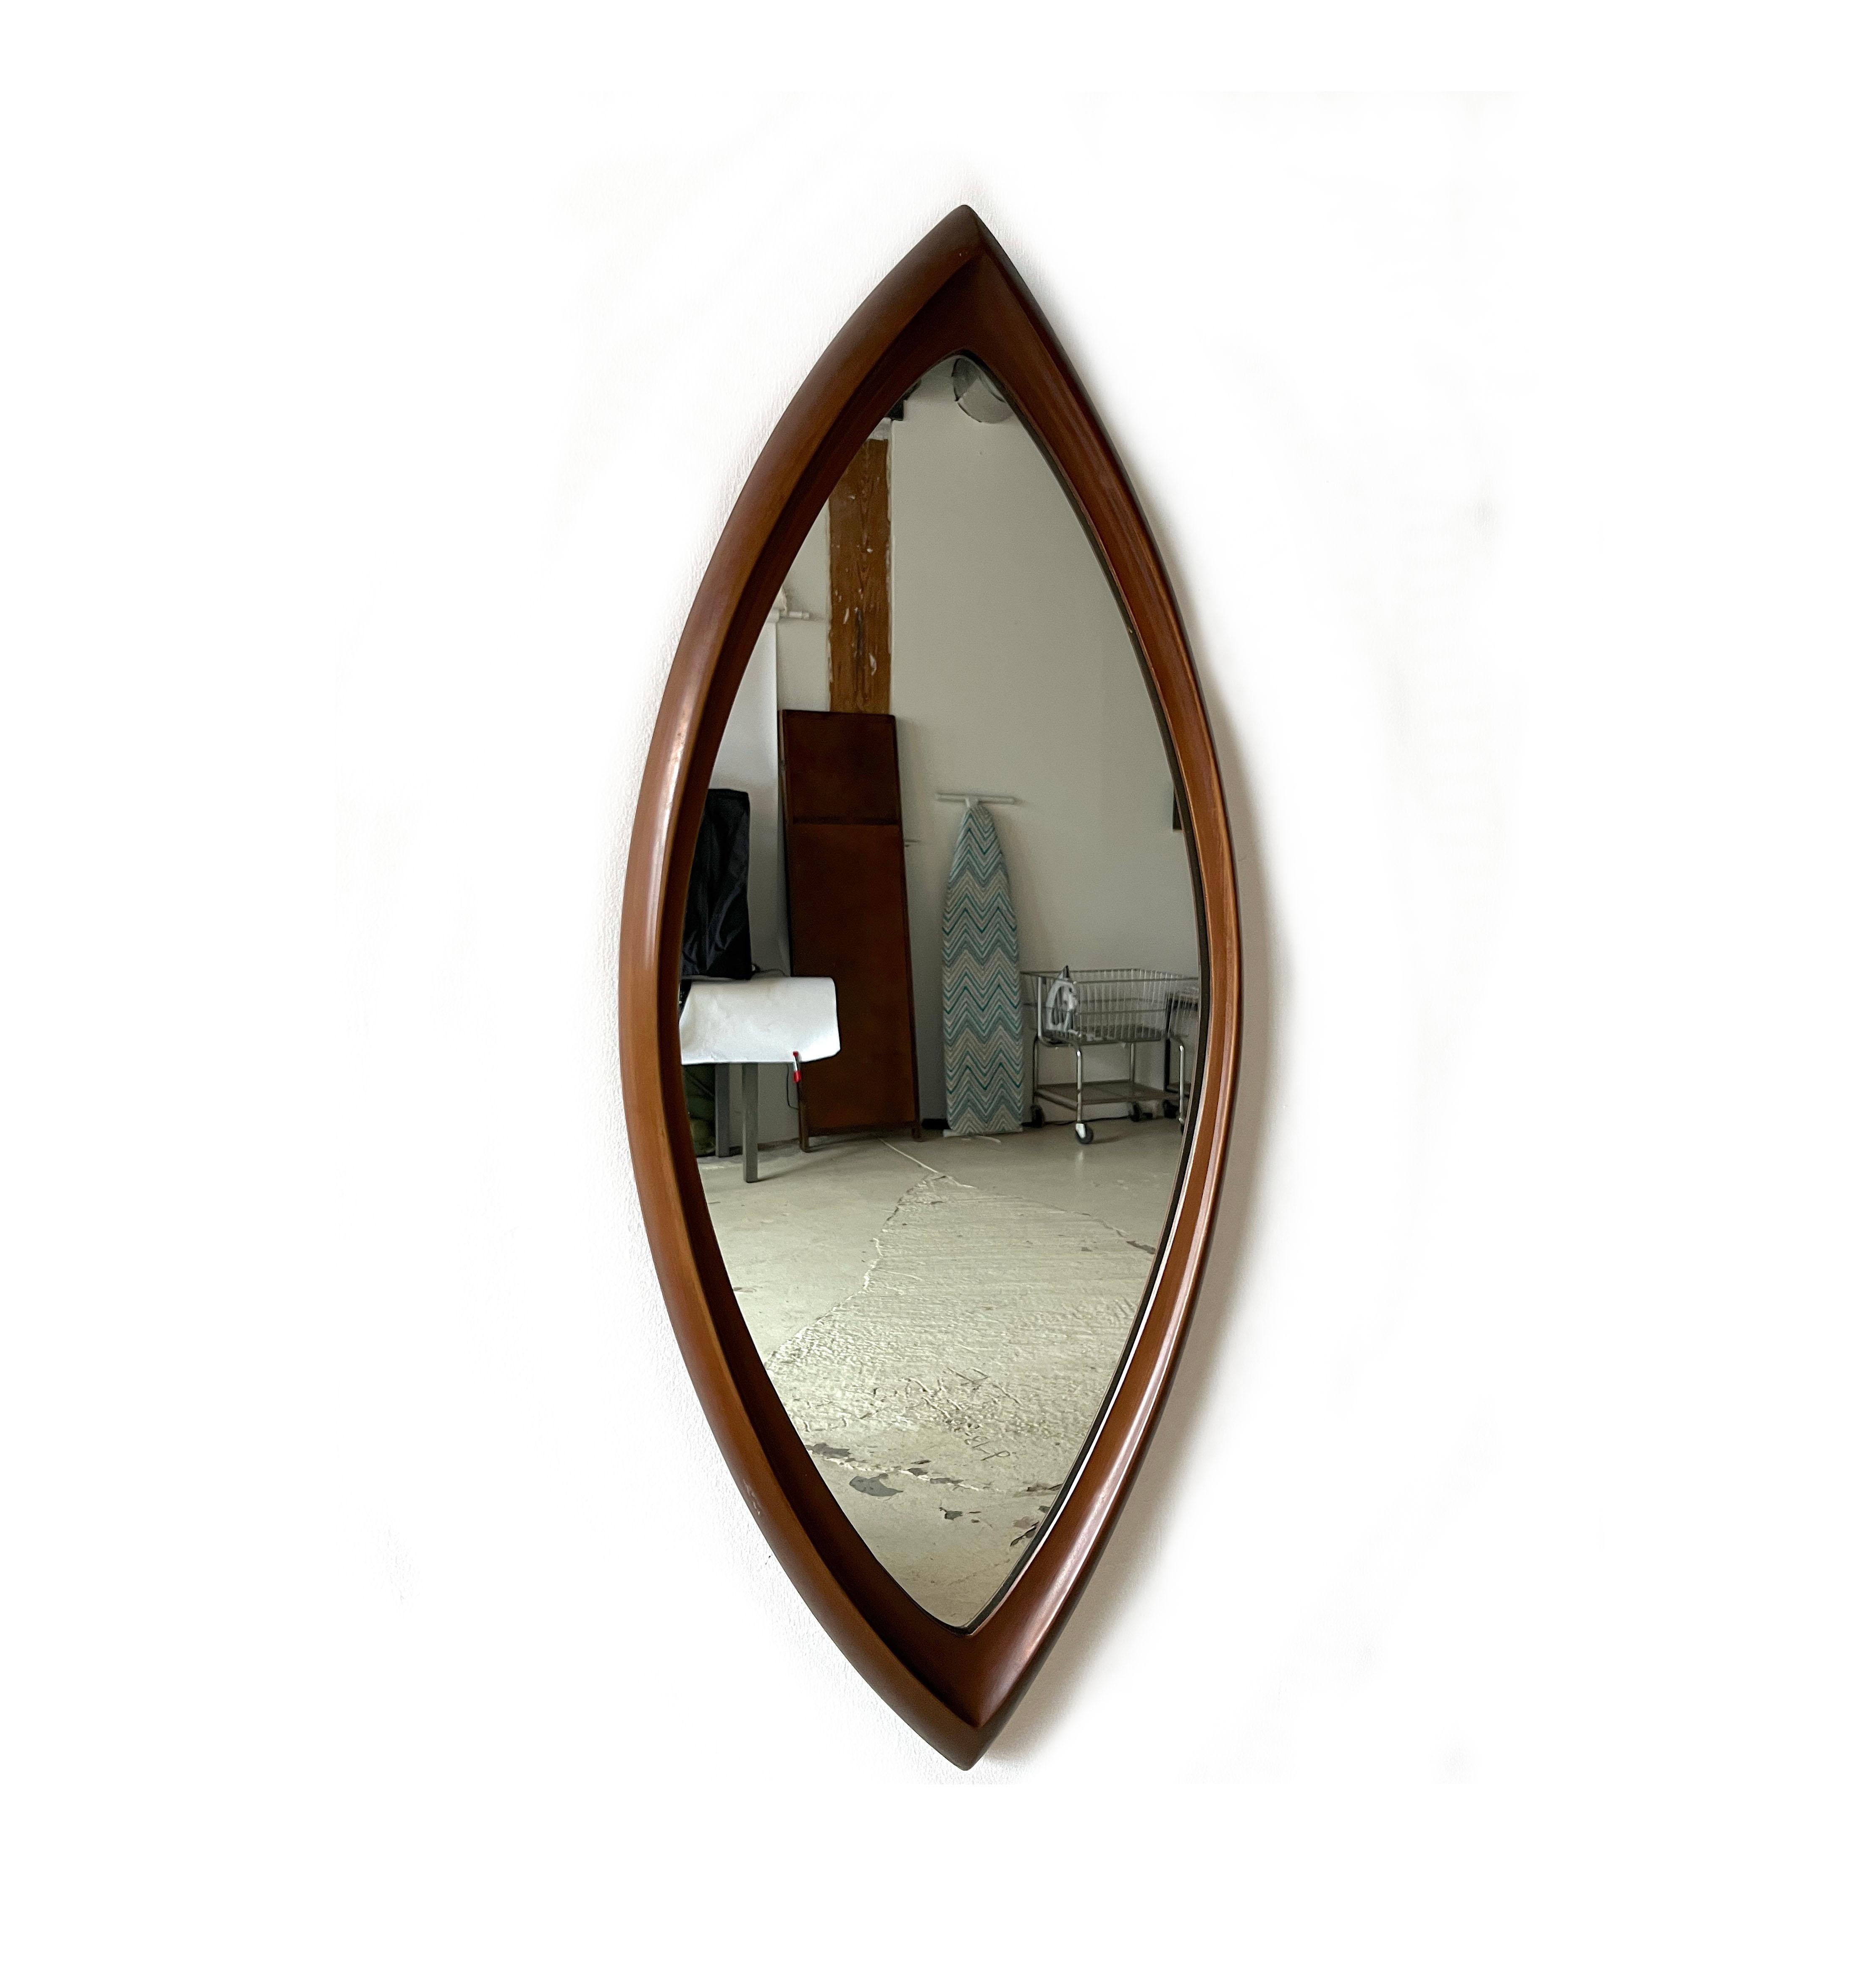 Wunderschön gestalteter moderner Spiegel. Geformtes, synthetisches Holz der Firma Syroco, das das Auge täuscht: Es sieht aus wie echtes Holz. Ideal für den Eingangsbereich, über einer Kommode oder in einem Badezimmer.

Coole 